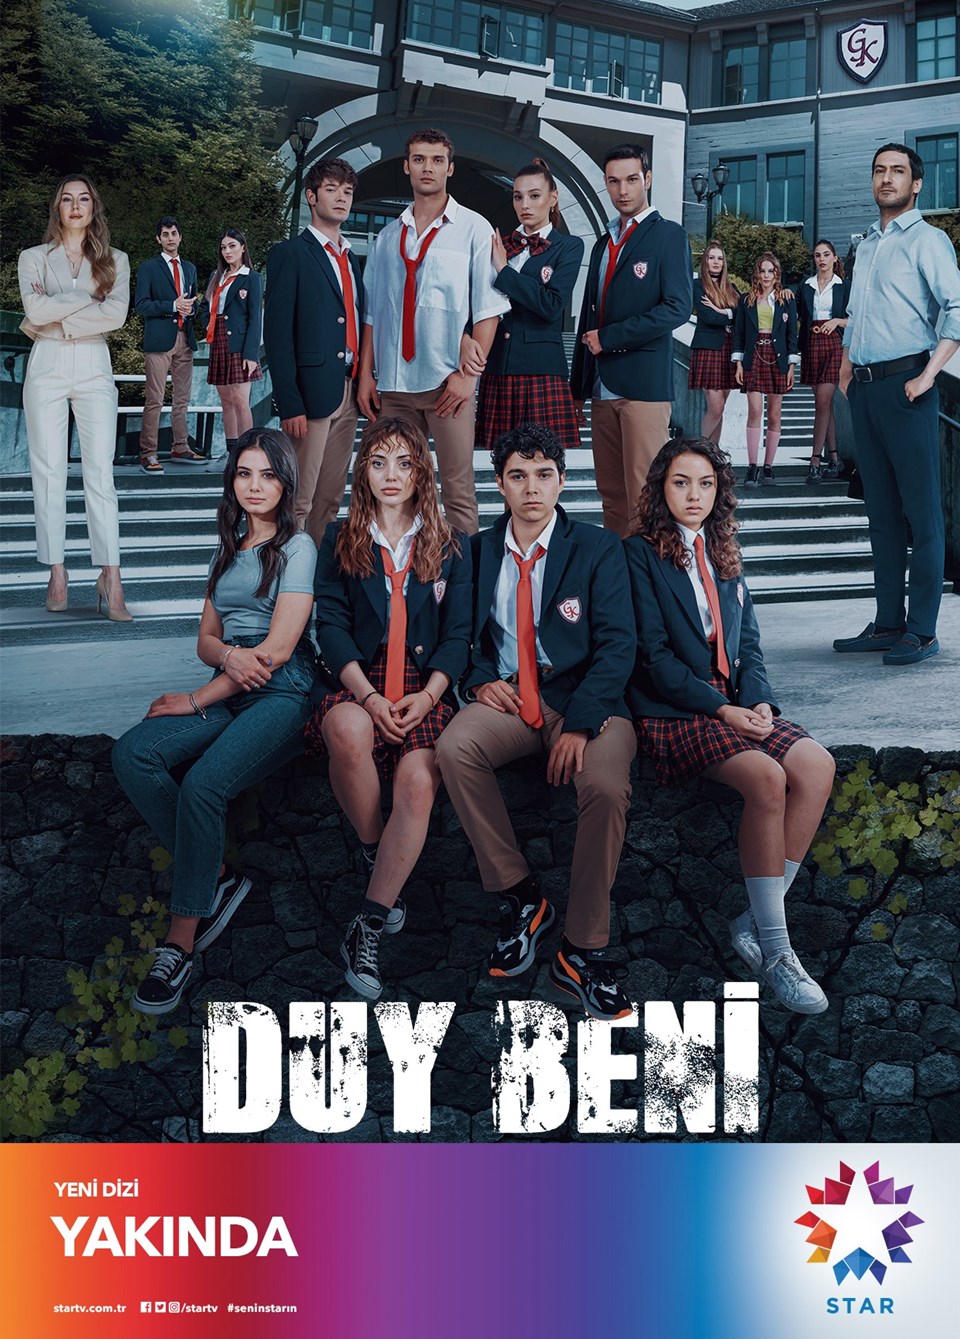 Star TV'nin yeni dizileri Ah Nerede ve Duy Beni'nin afişleri yayınlandı - 2